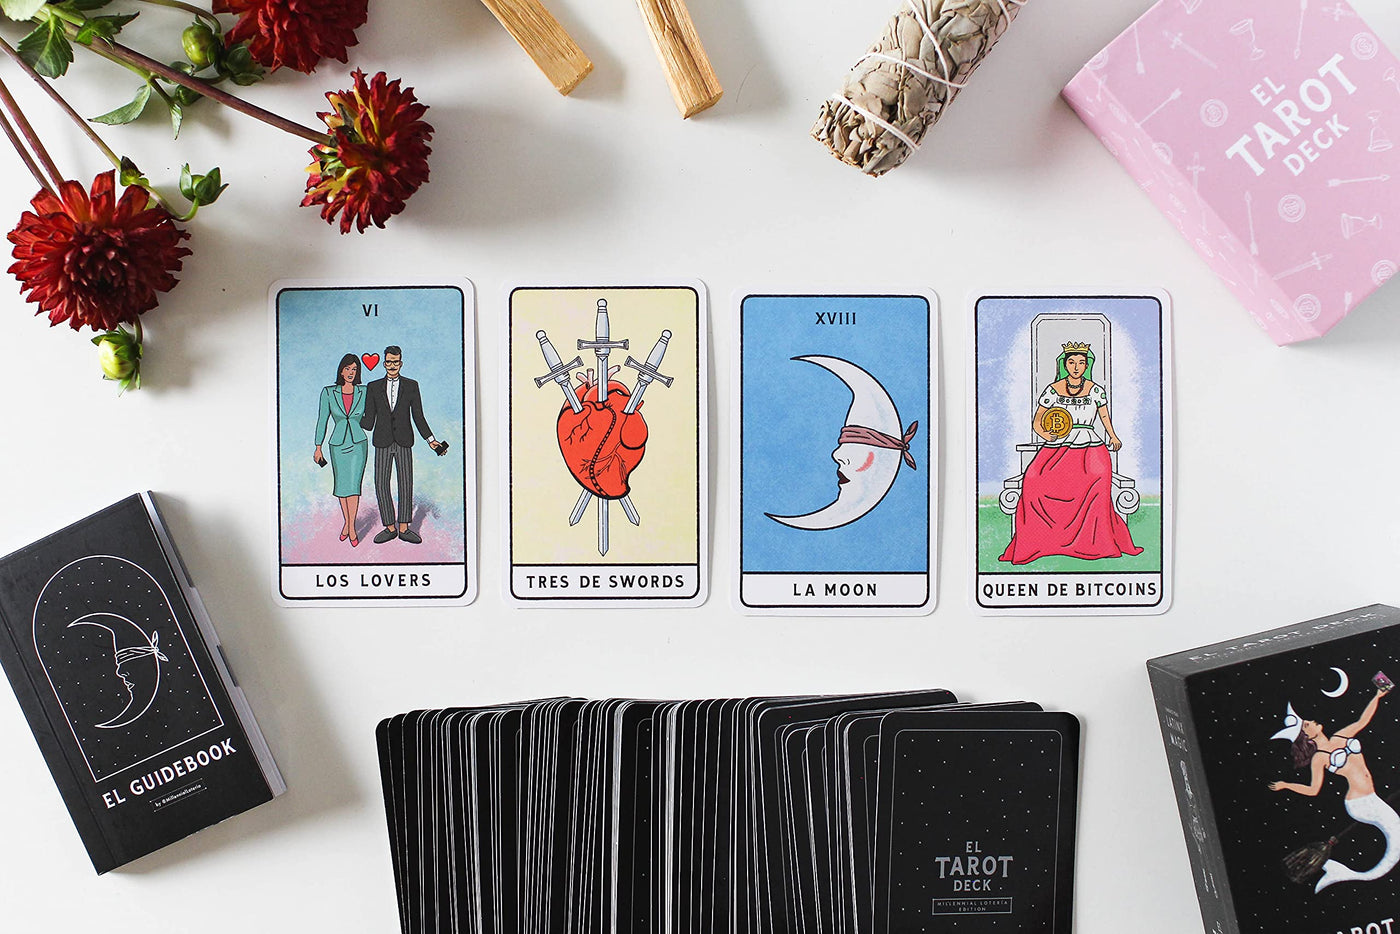 Photo of four tarot cards including "Los Lovers", "Tres de swords", "La Moon" and "Queen de Bitcoins"